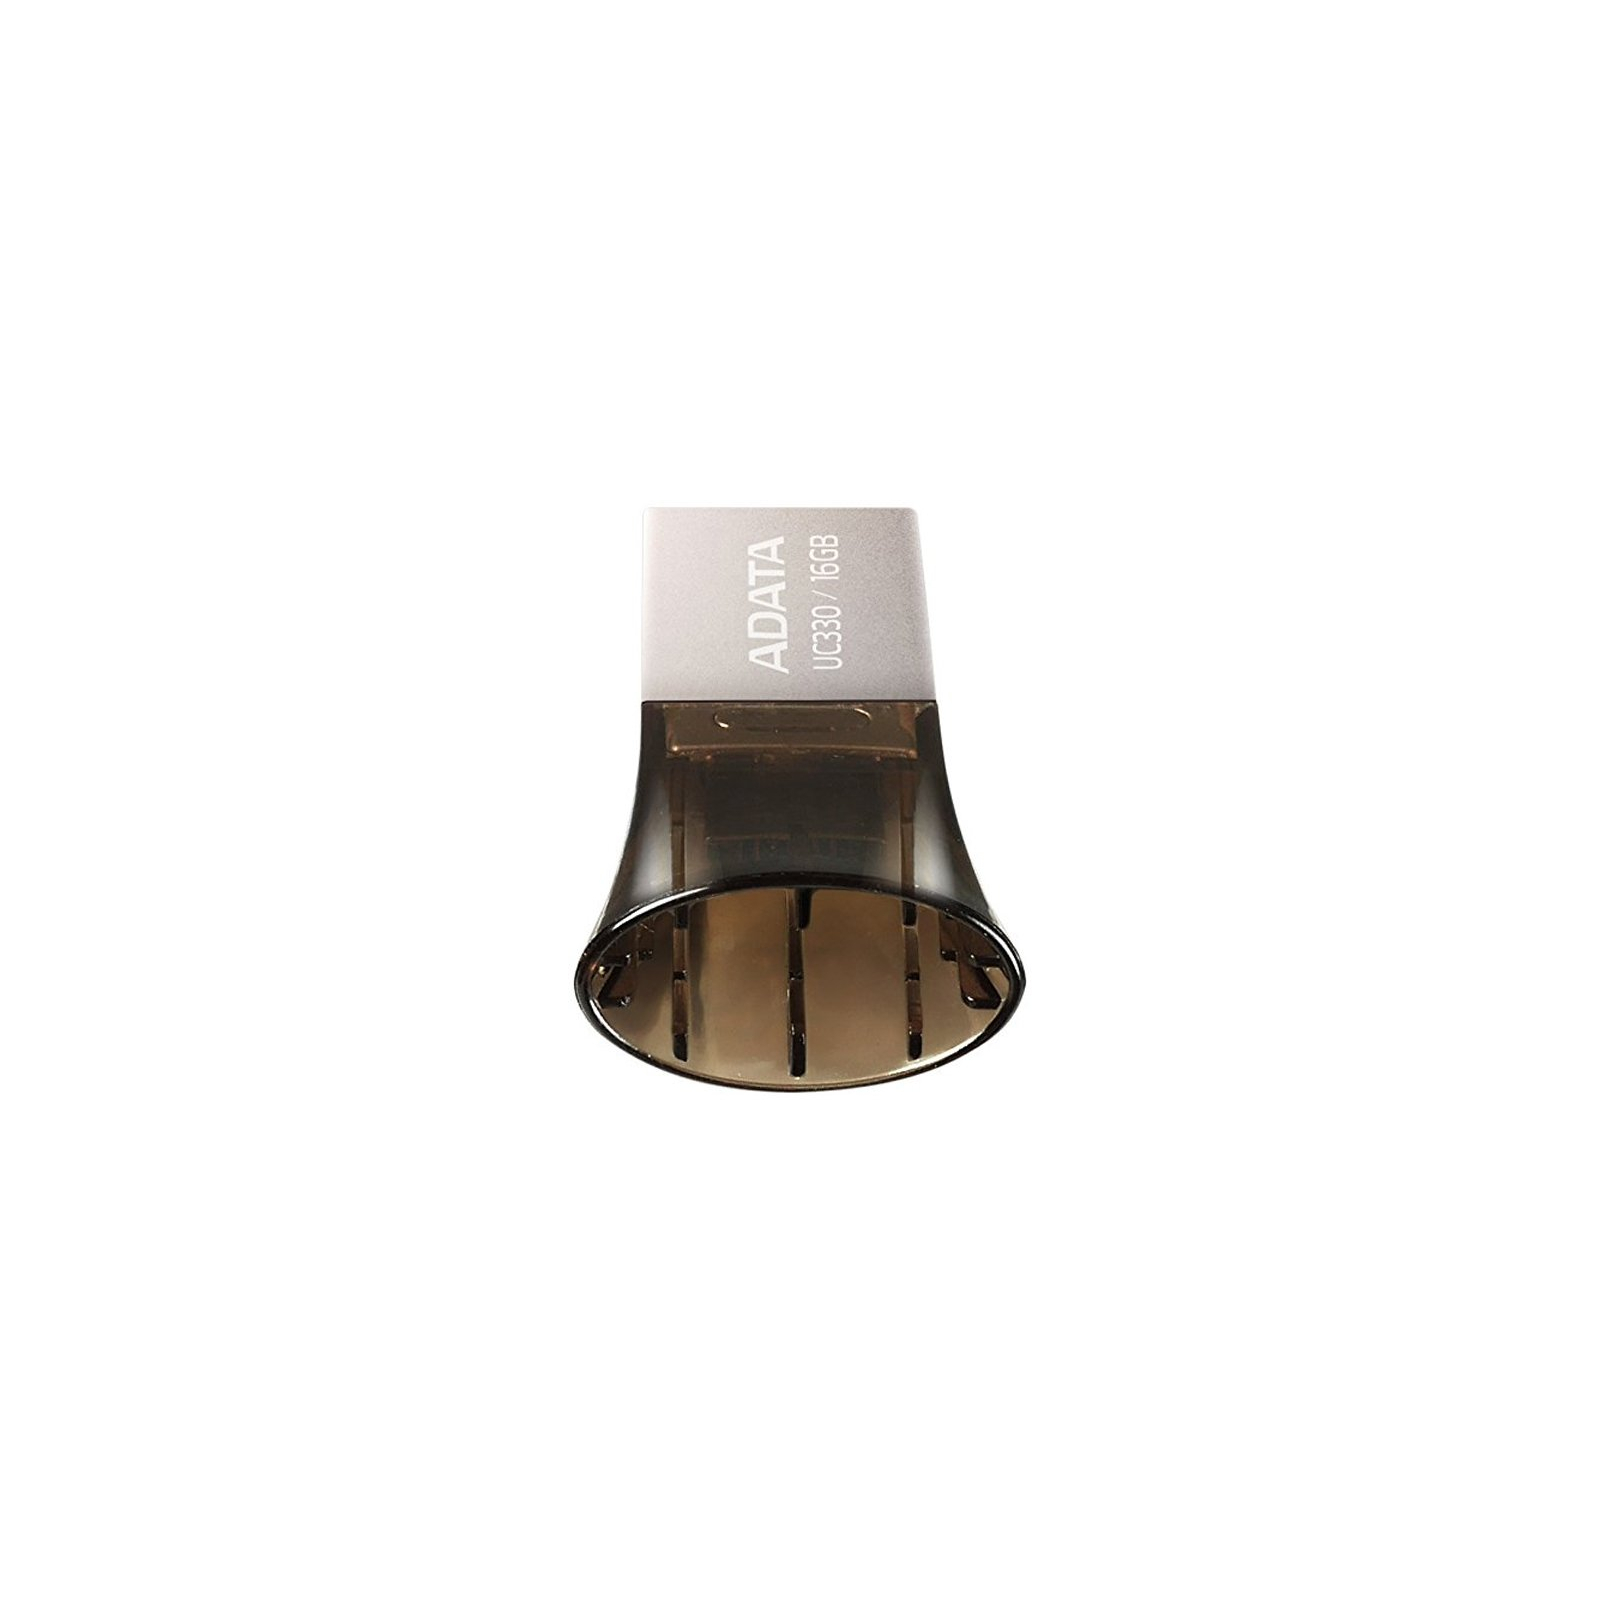 USB флеш накопитель ADATA 16GB UC330 Black USB 2.0 OTG (AUC330-16G-RBK) изображение 5